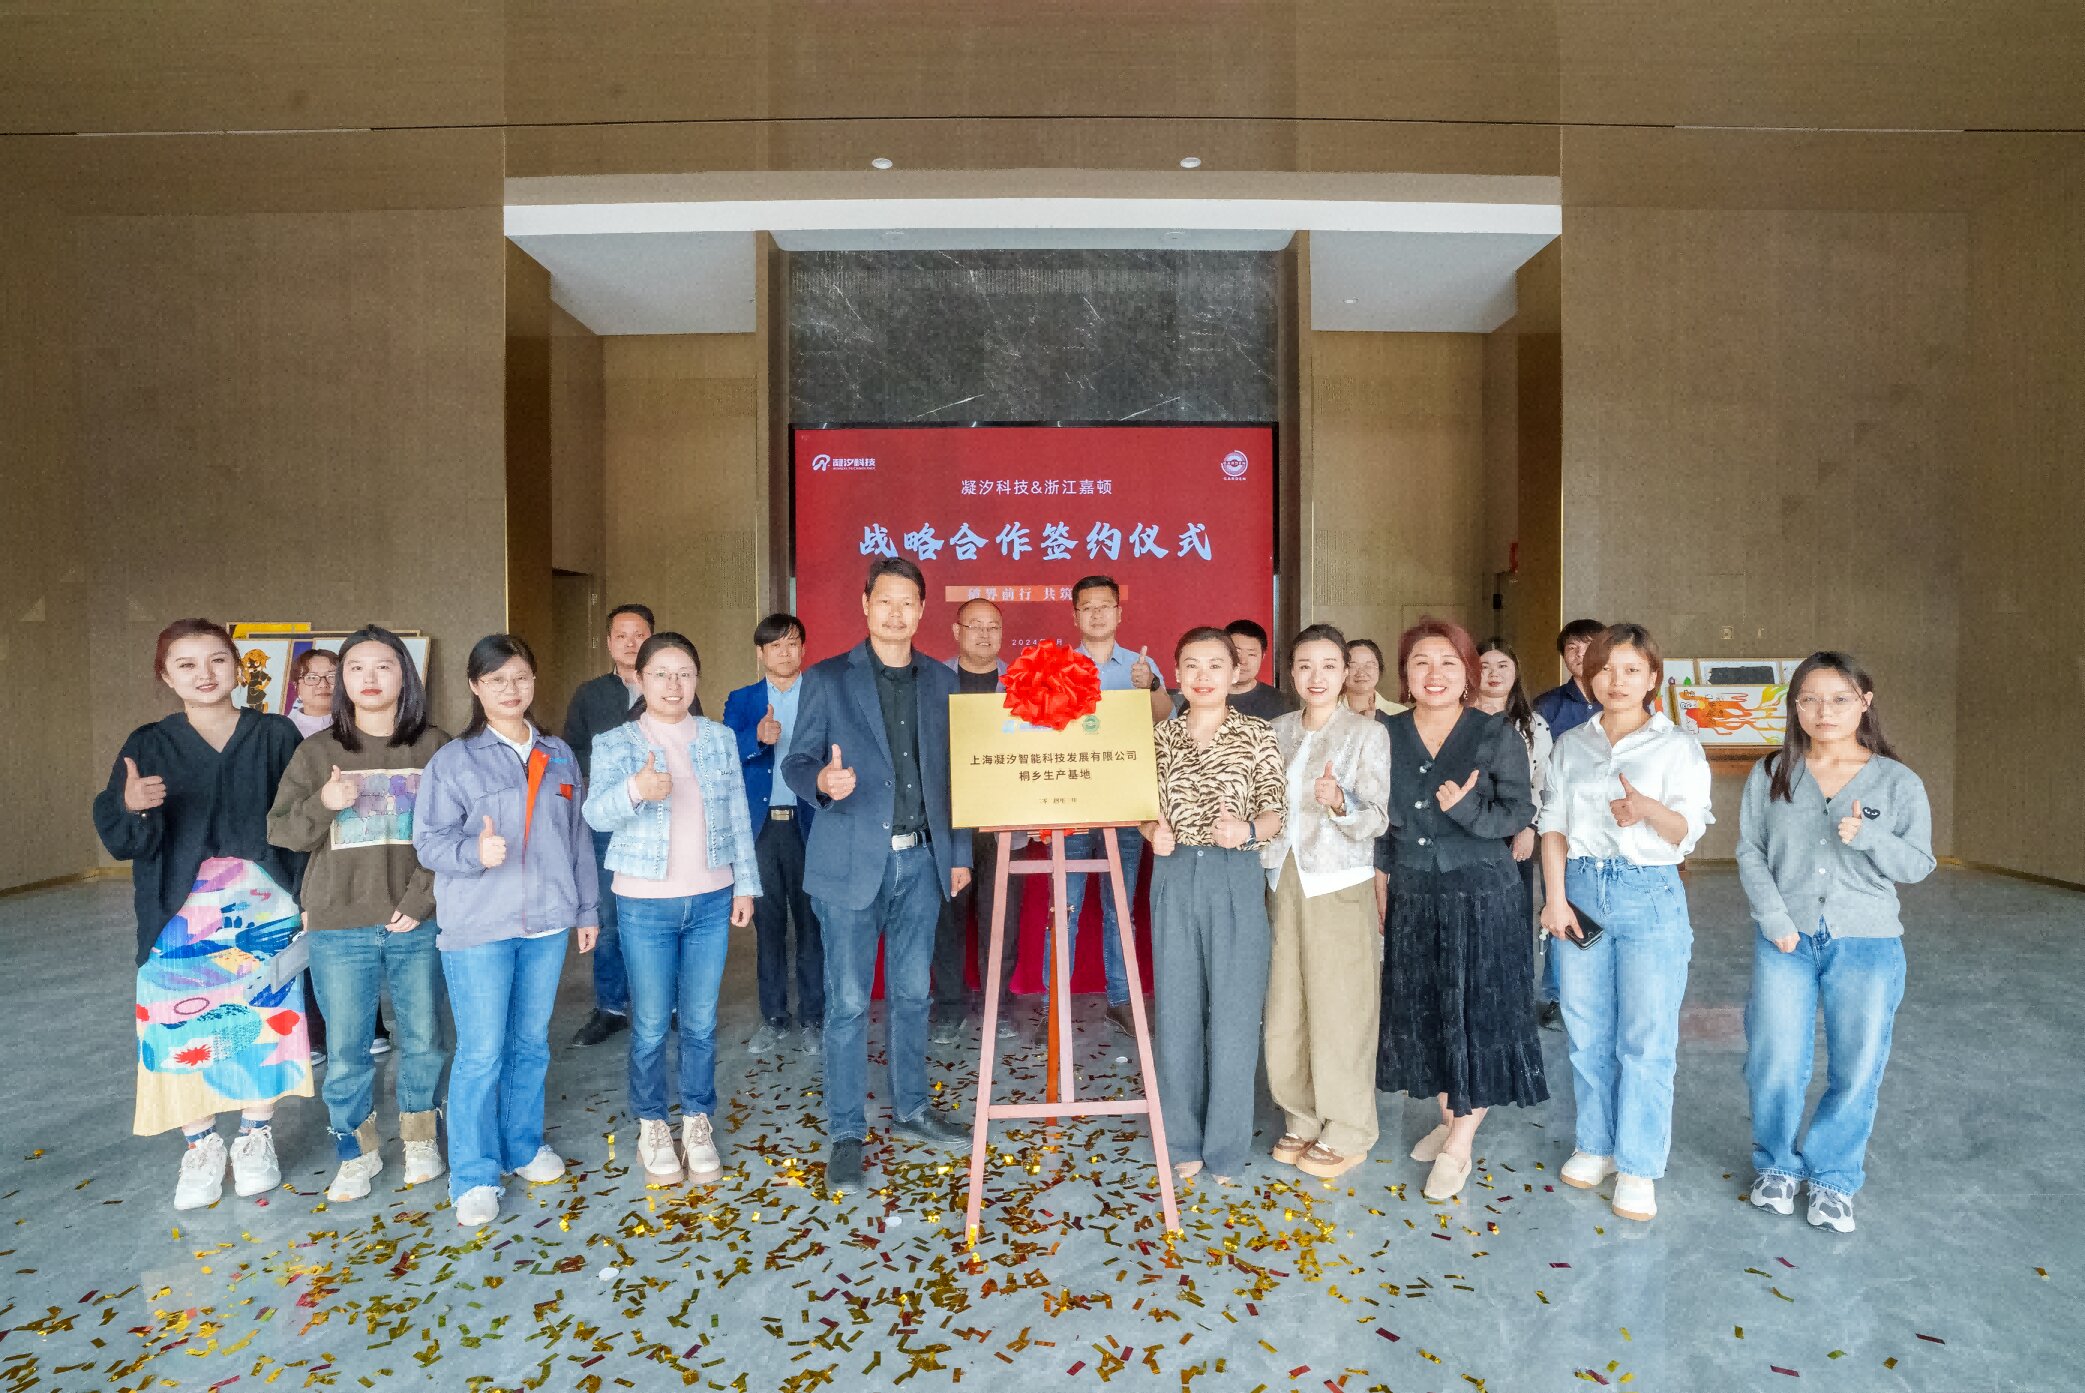 上海凝汐科技与浙江嘉顿达成合作，共同推动家居产业链升级